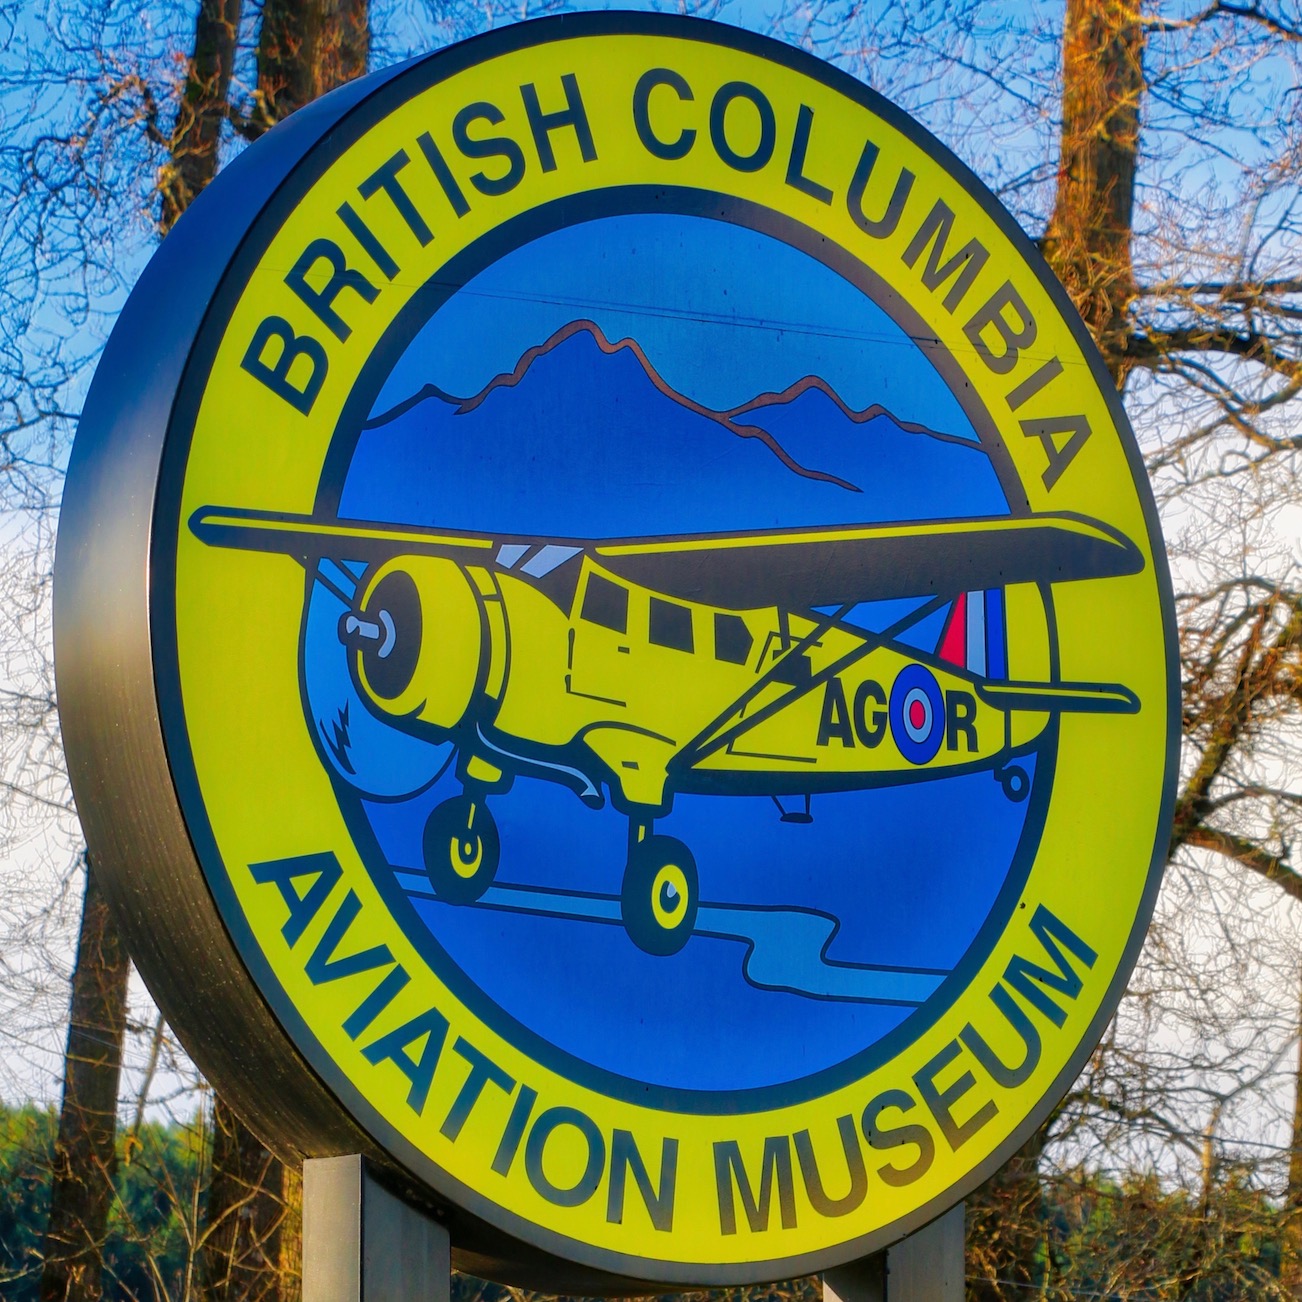 British Columbia Aviation Museum, Victoria, BC